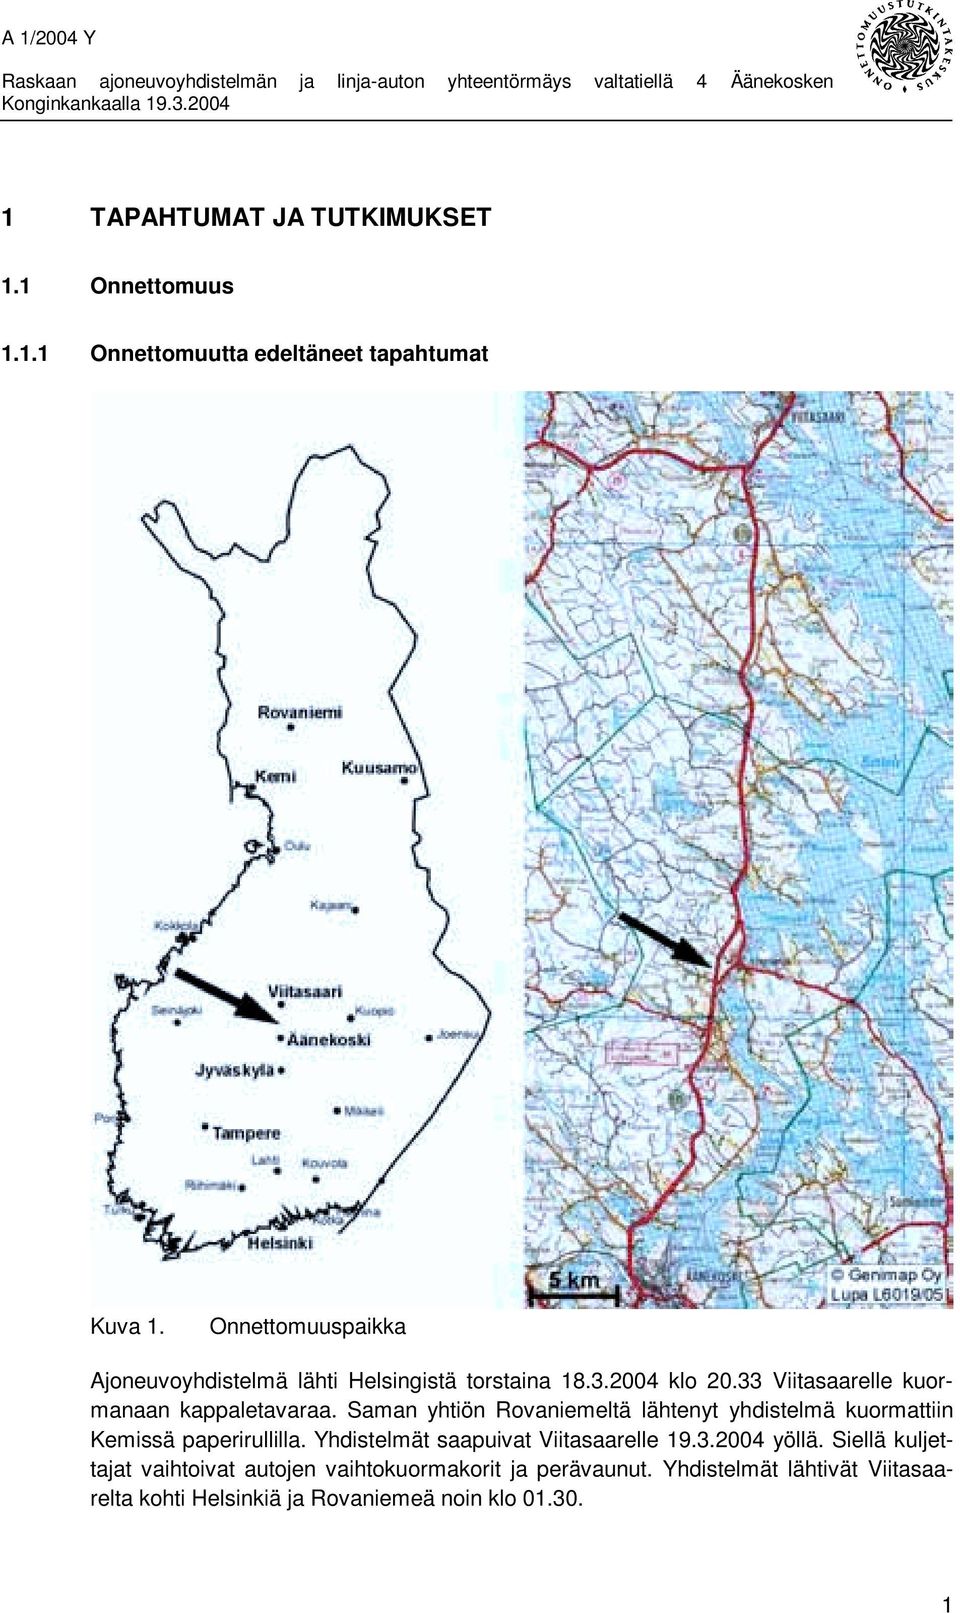 Saman yhtiön Rovaniemeltä lähtenyt yhdistelmä kuormattiin Kemissä paperirullilla. Yhdistelmät saapuivat Viitasaarelle 19.3.